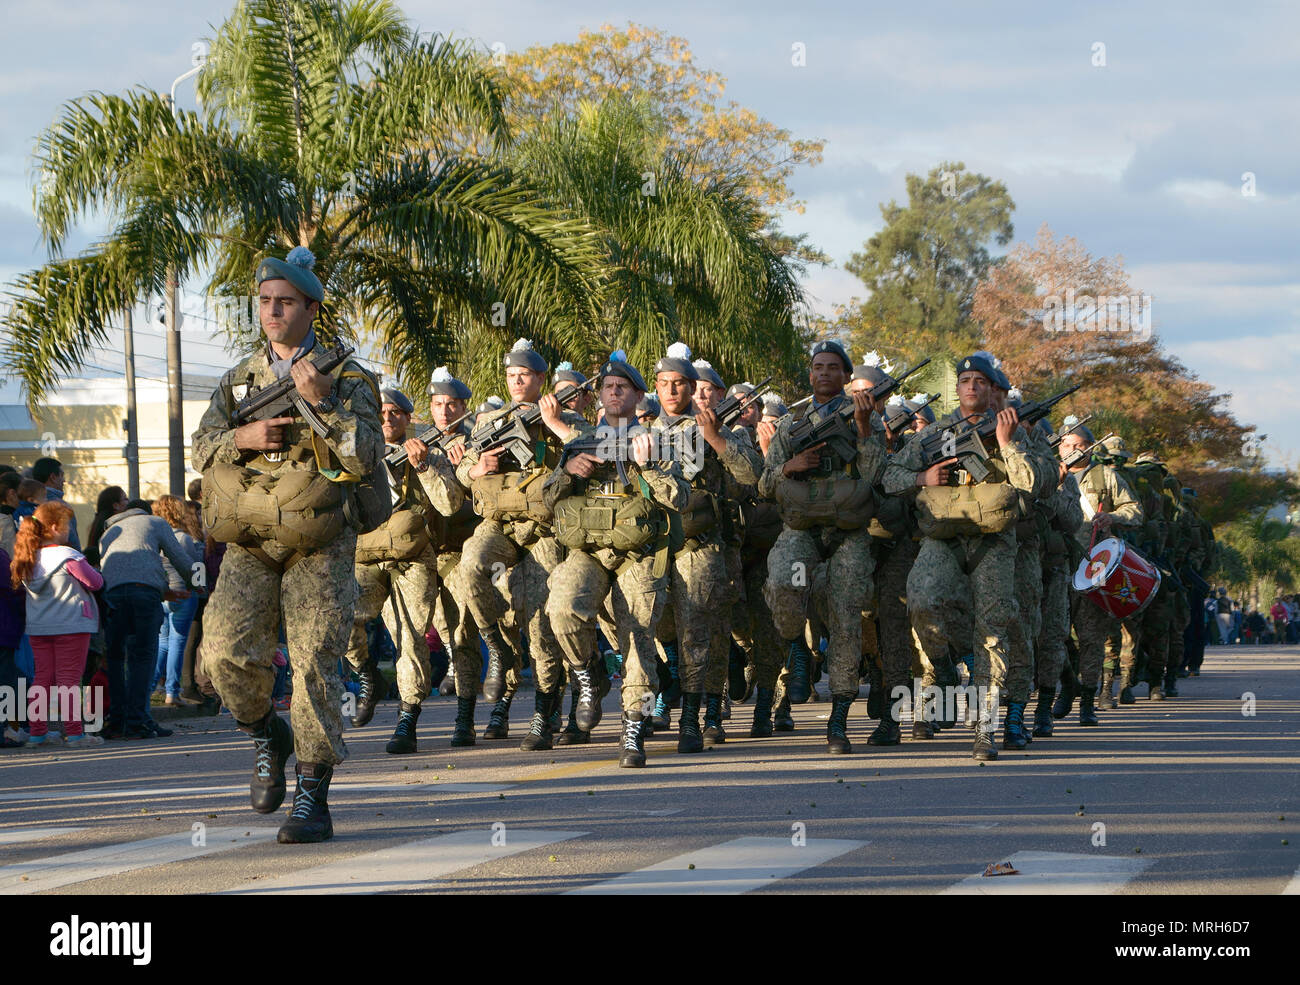 CANELONES, URUGUAY - 18 MAI 2018 : Armée de l'Uruguay, l'Organisation des Nations Unies, 207 anniversaire de la bataille de las Piedras. Banque D'Images